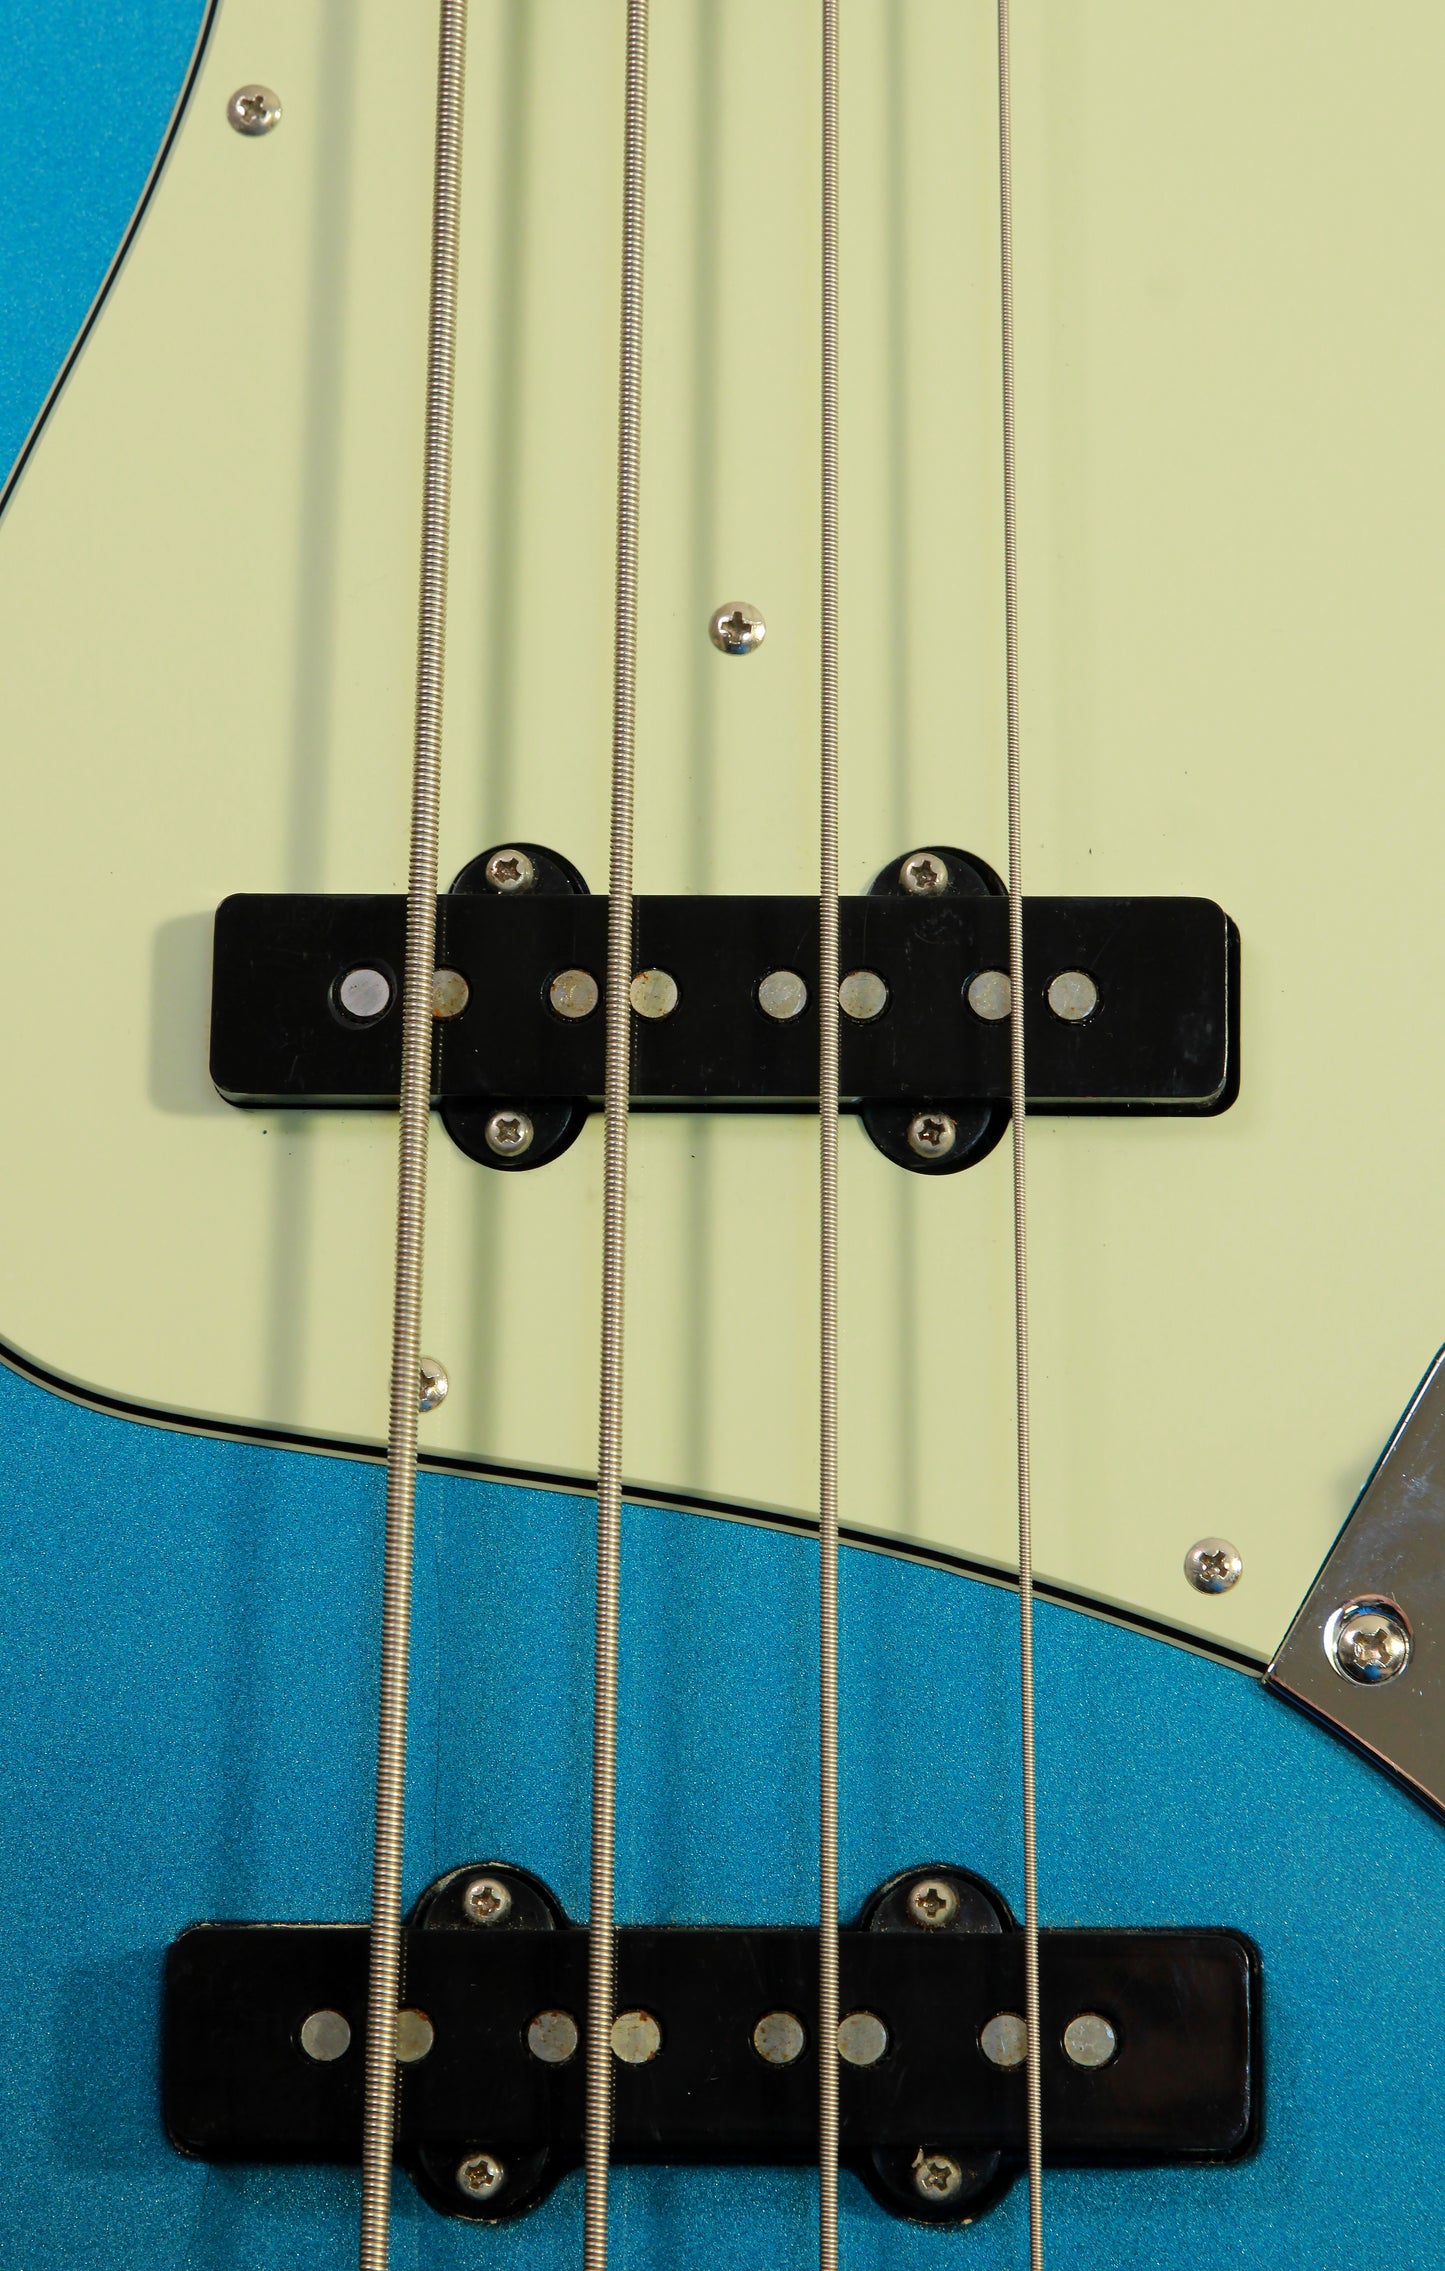 Seymour Duncan Traditional Jazz Bass Metallic Blue